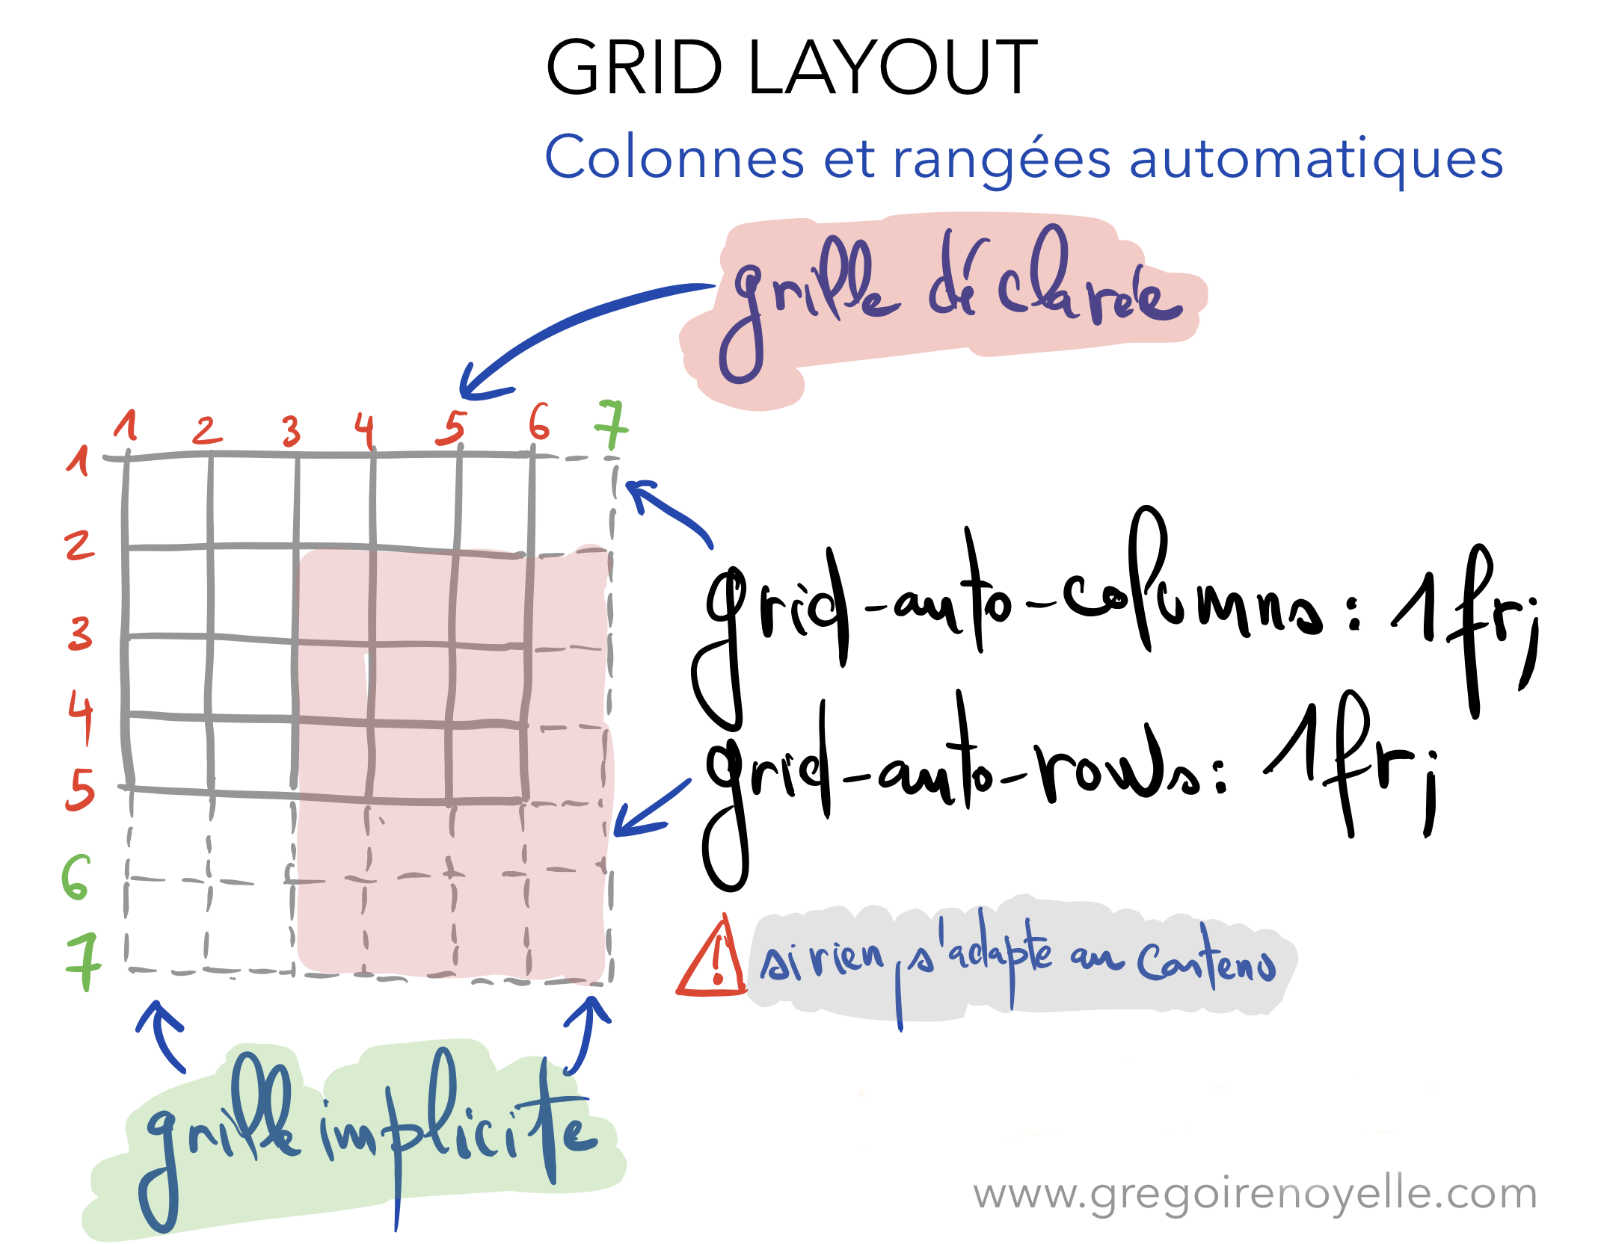 Principe de grille implicite dans Grid Layout